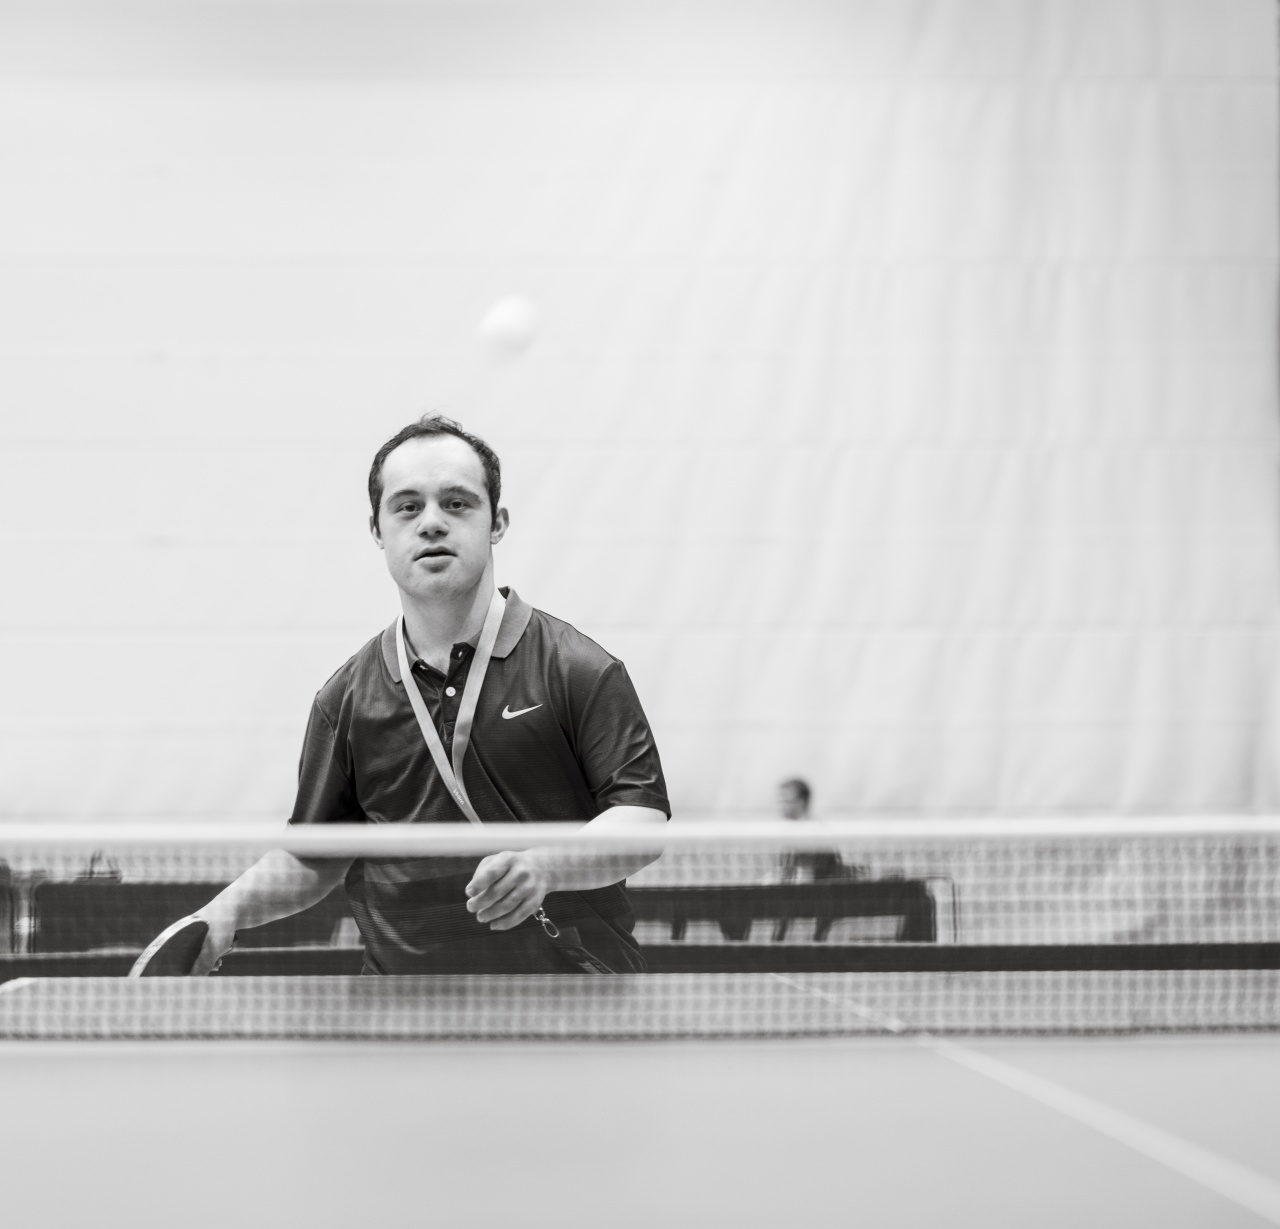 Schwarz-weiß-Foto eines Tischtennisspielers an der Platte.